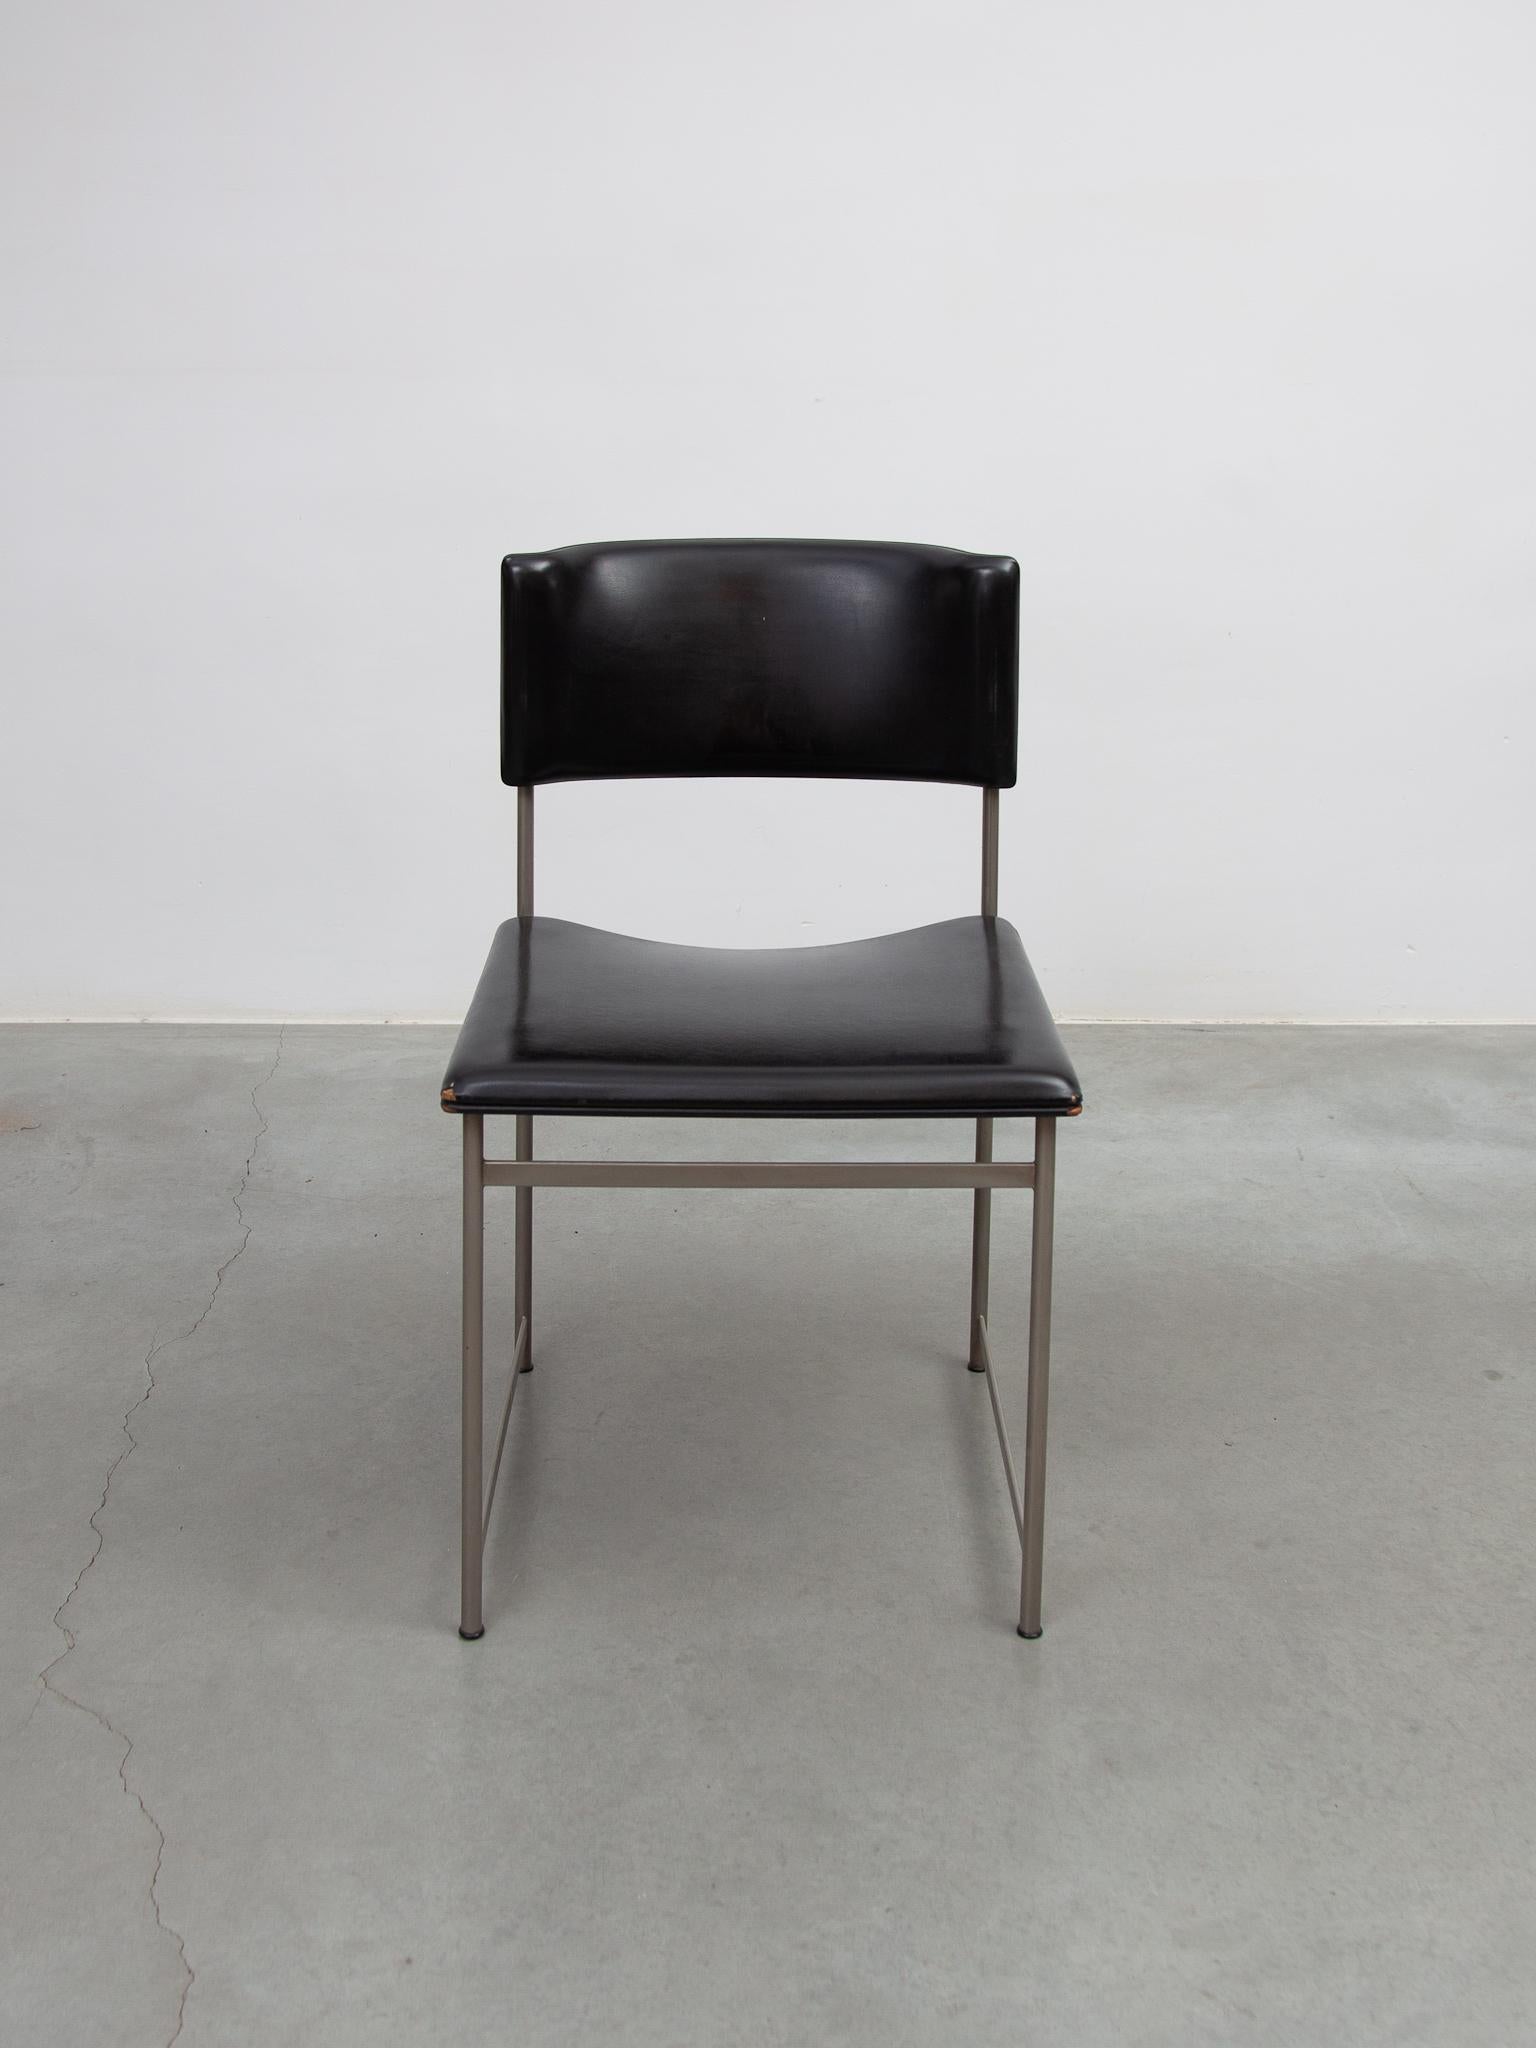 Schöner Vintage-Satz von sechs SM08-Esszimmerstühlen aus schwarzem Leder, entworfen von Cees Braakman für Pastoe, 1950er Jahre. In ursprünglich gutem Zustand mit einigen Gebrauchsspuren.
Dies ist eine seltene Ausgabe von Esszimmerstühlen alle Stühle